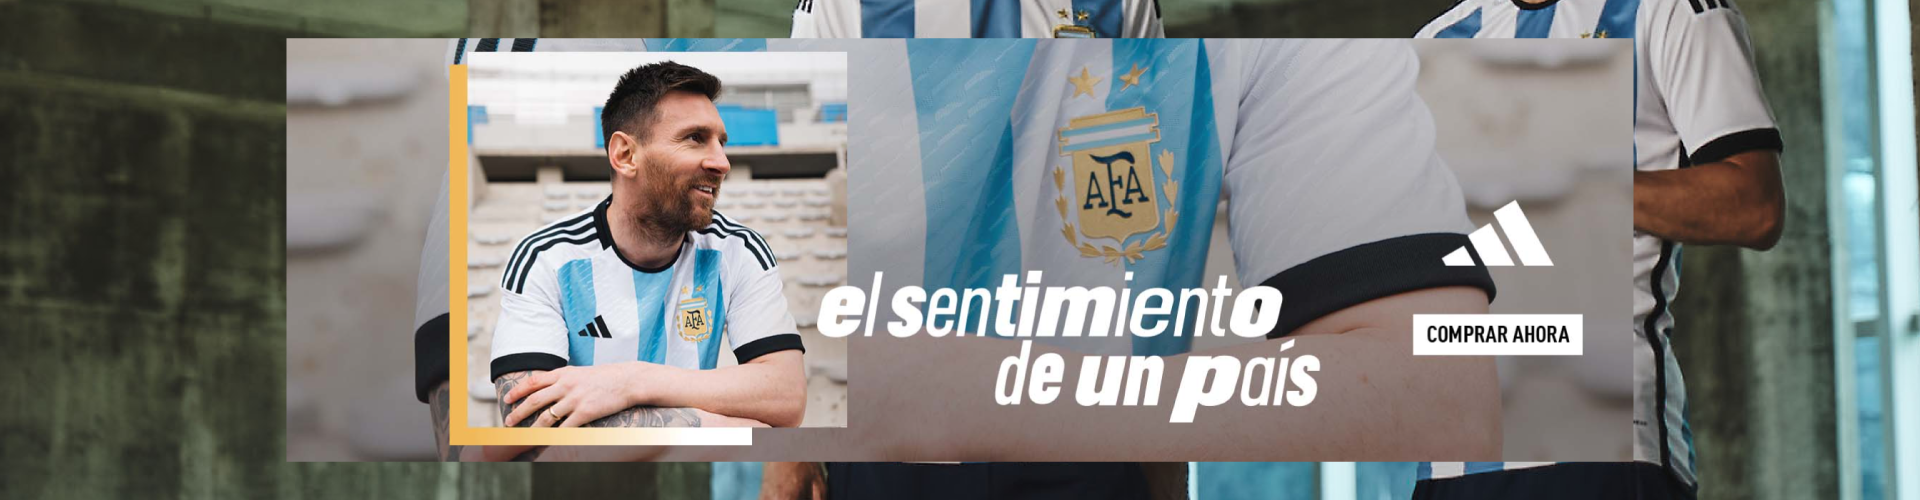 Banner Argentina